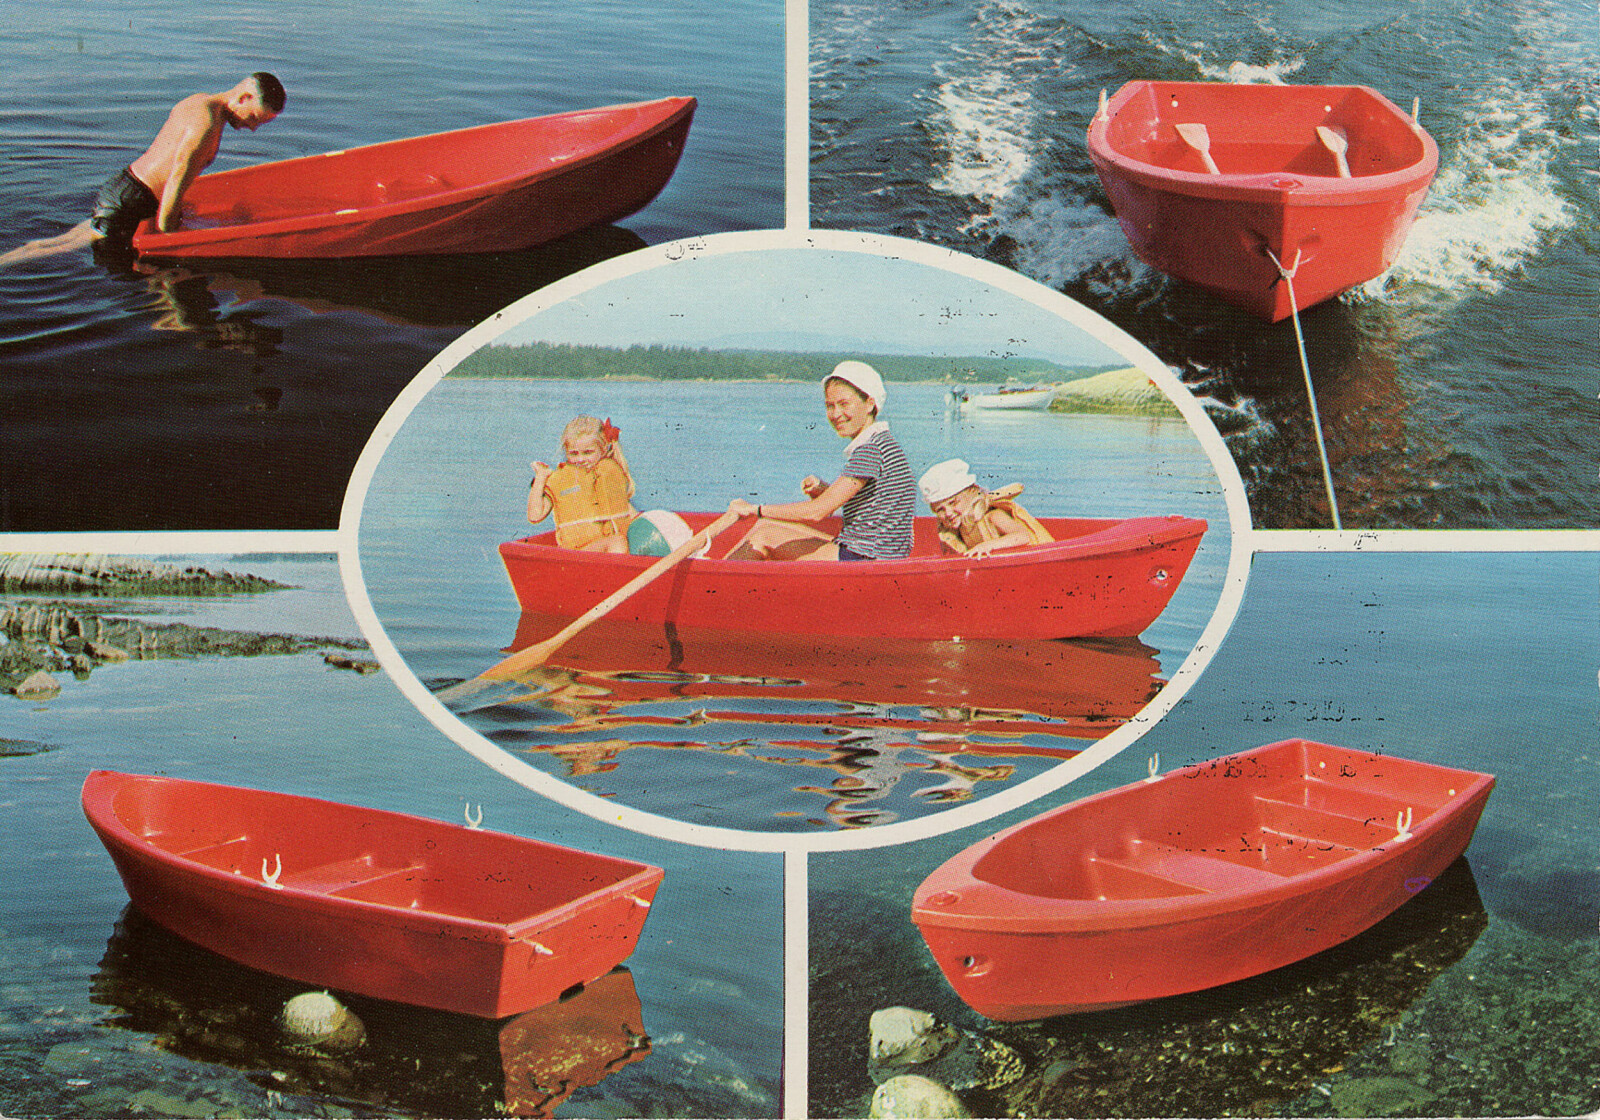 <b>PIONERS LILLE RØDE:</b> Klassikeren Pioner 8. Slepejolle, robåt, badebåt. Den lille røde dukker opp på netthinnen straks noen sier Pioner. 